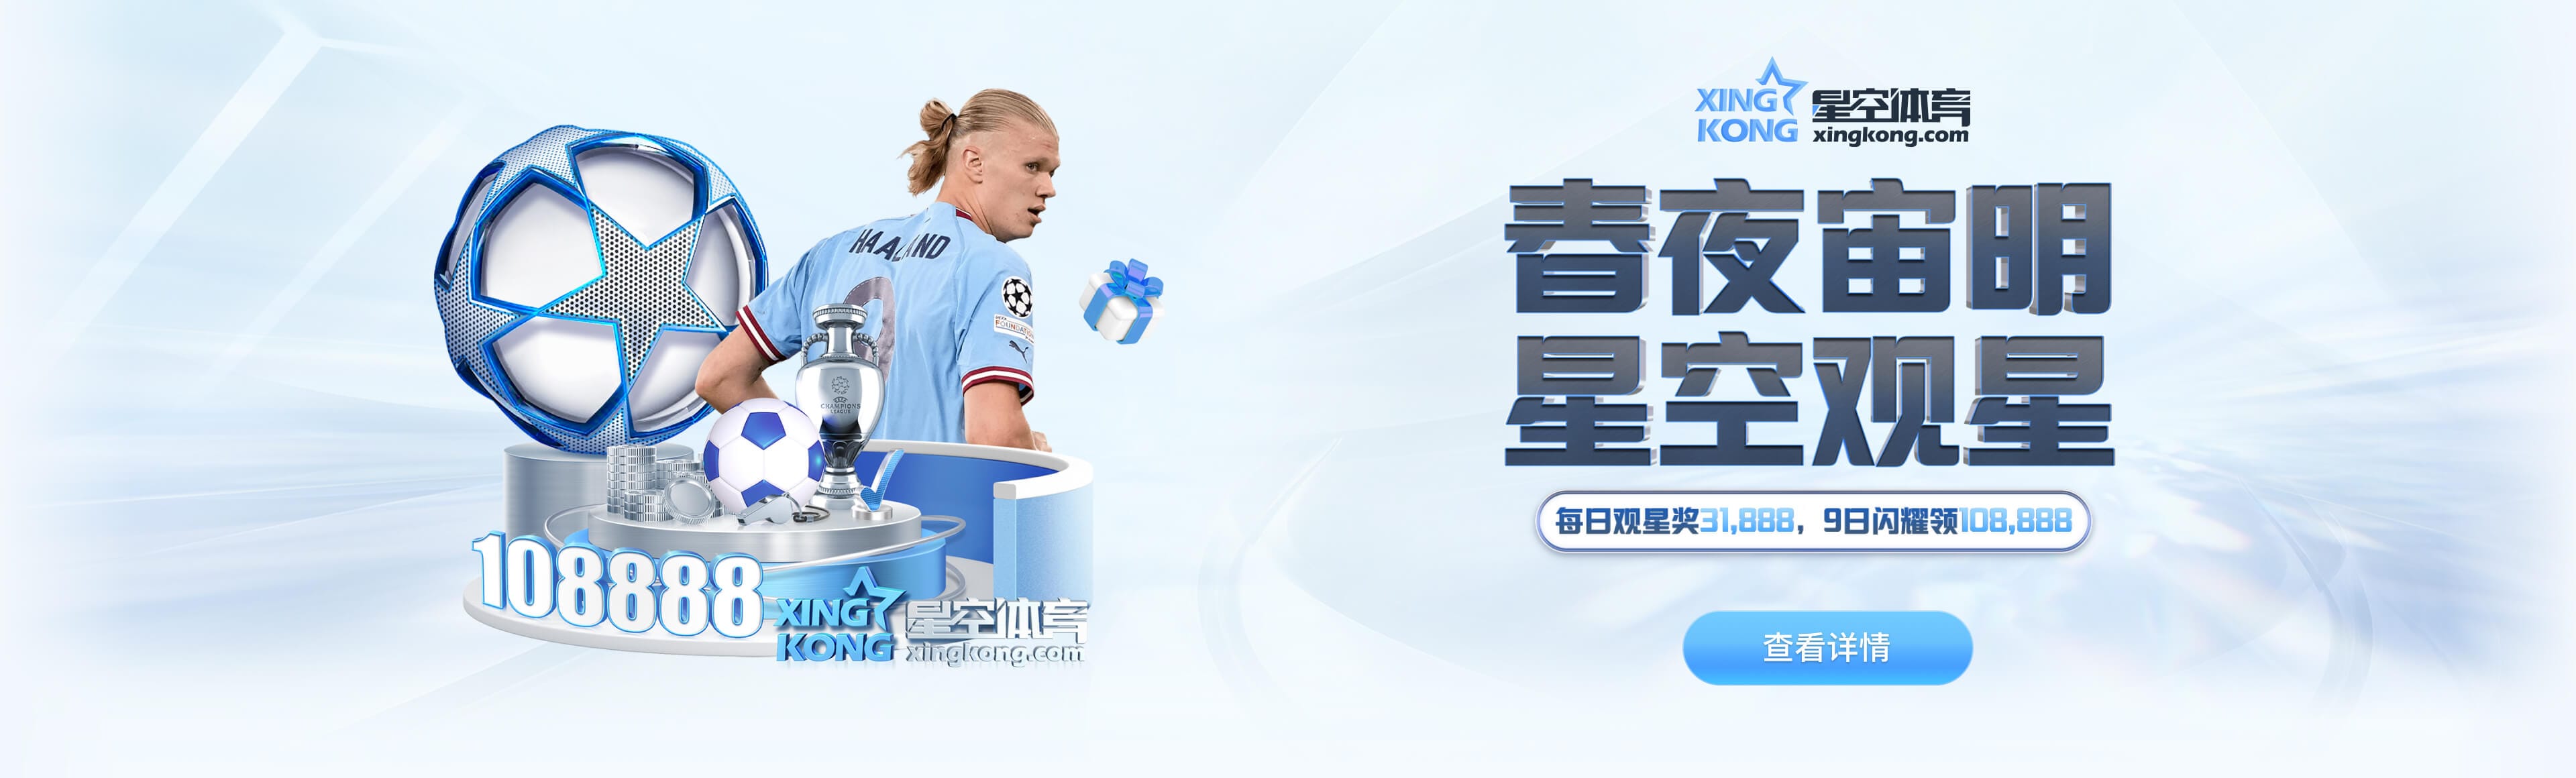 6t体育·(中国) 官方网站-app下载